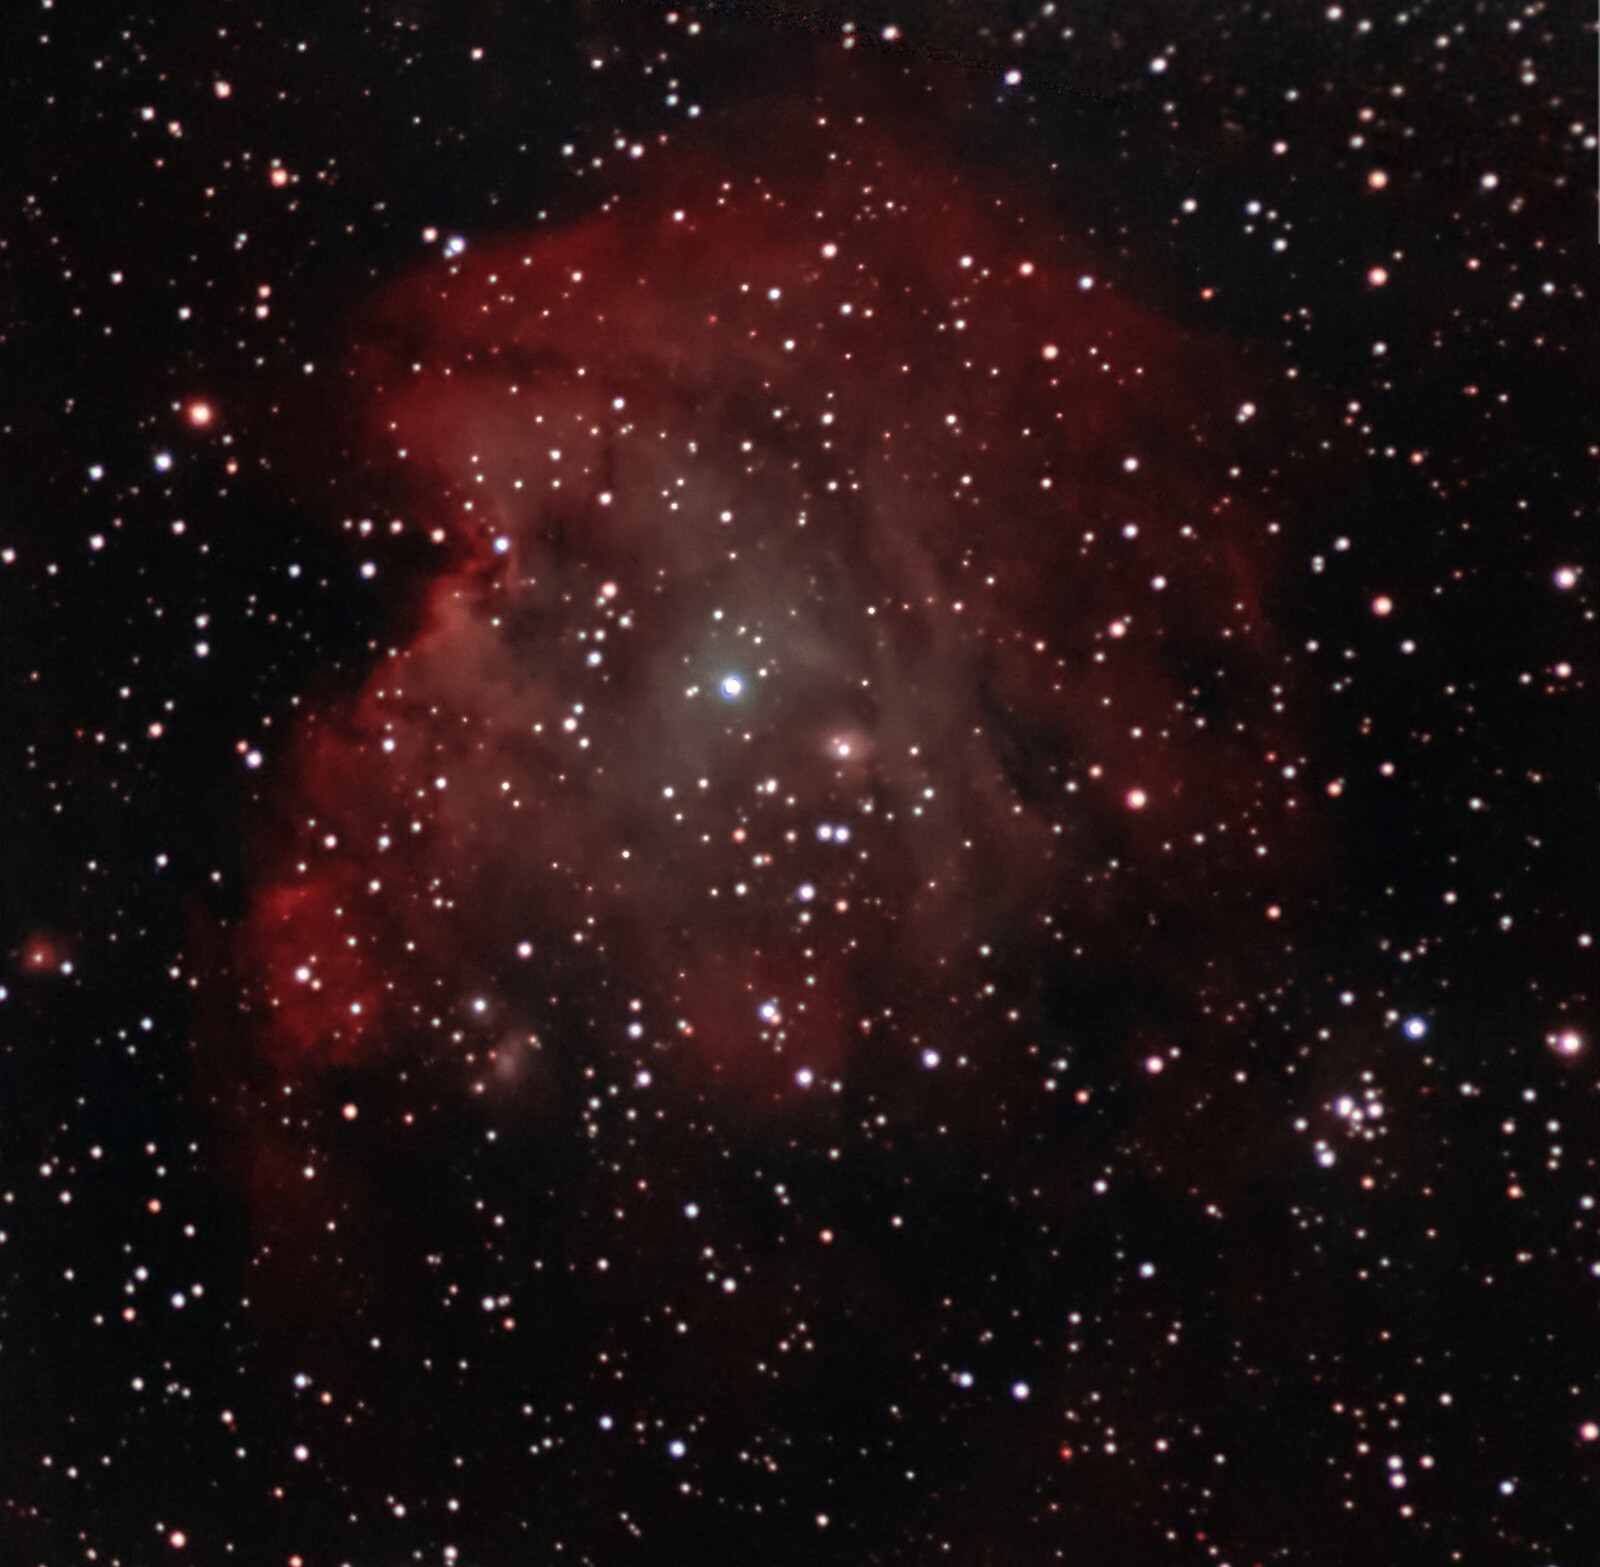 Monkey Head (NGC2174)